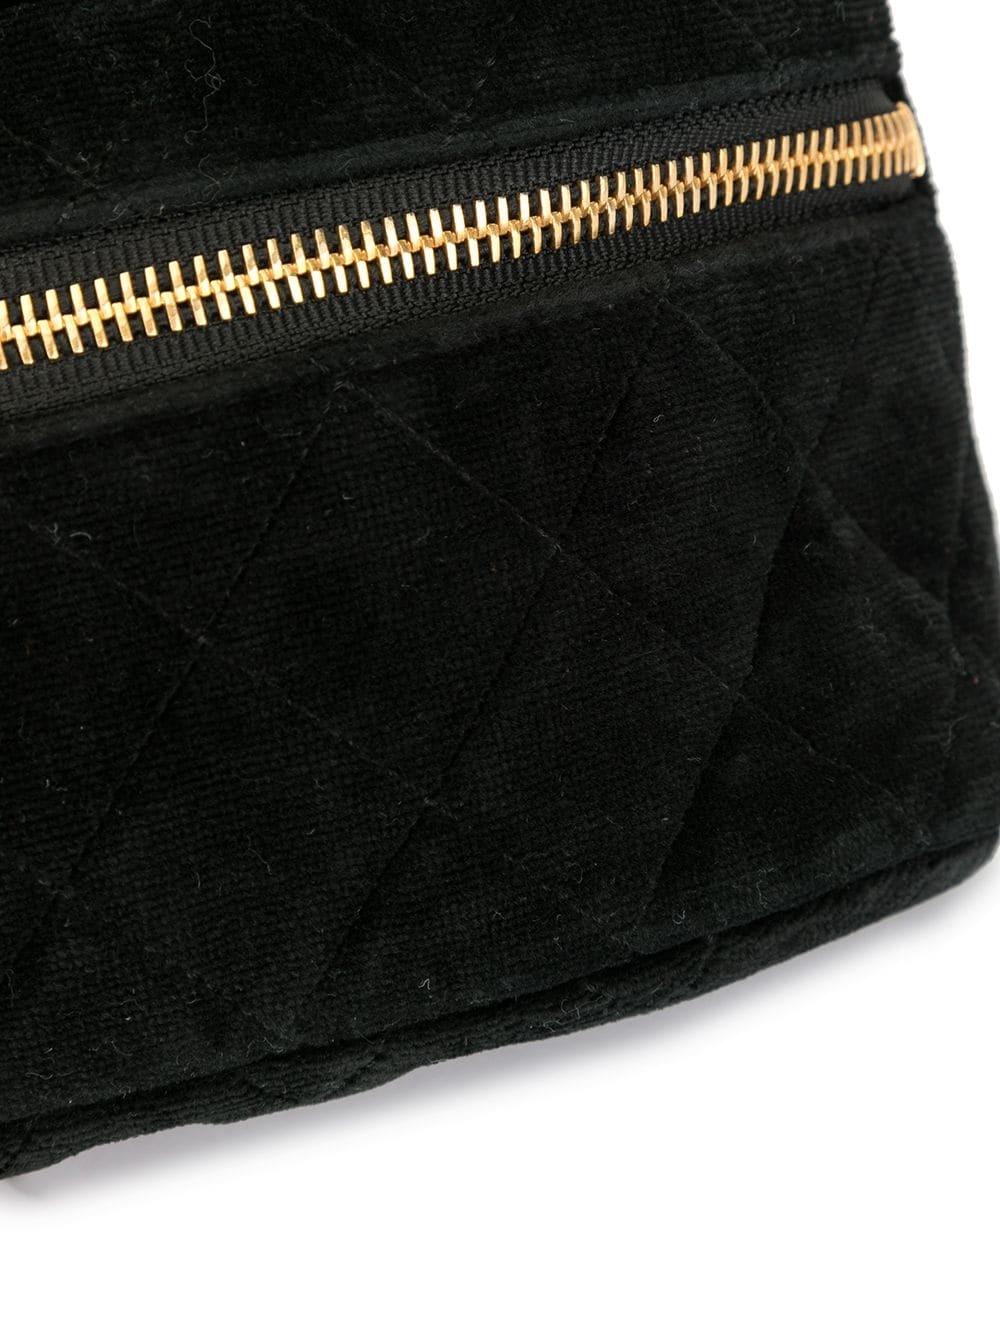 Chanel 1991 Vintage Velvet Quilted Medallion Fanny Pack Waist Belt Bag Rare Bag For Sale 2